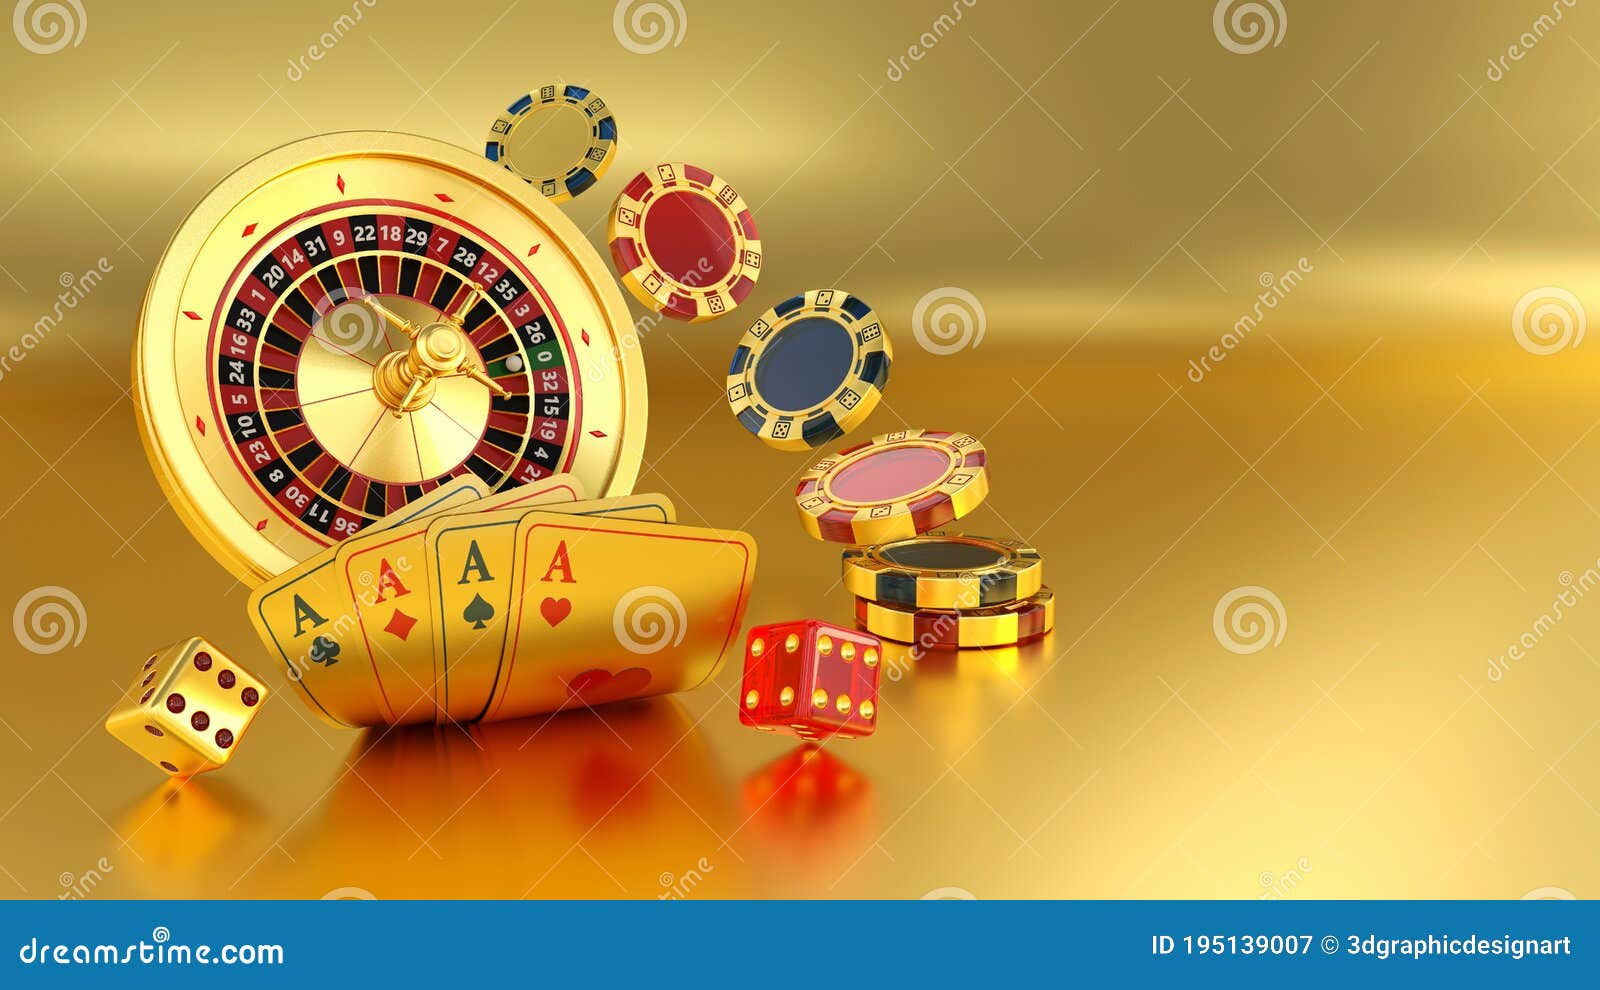 Domine su sitios de casino para jugar a la ruleta europea en 5 minutos al día